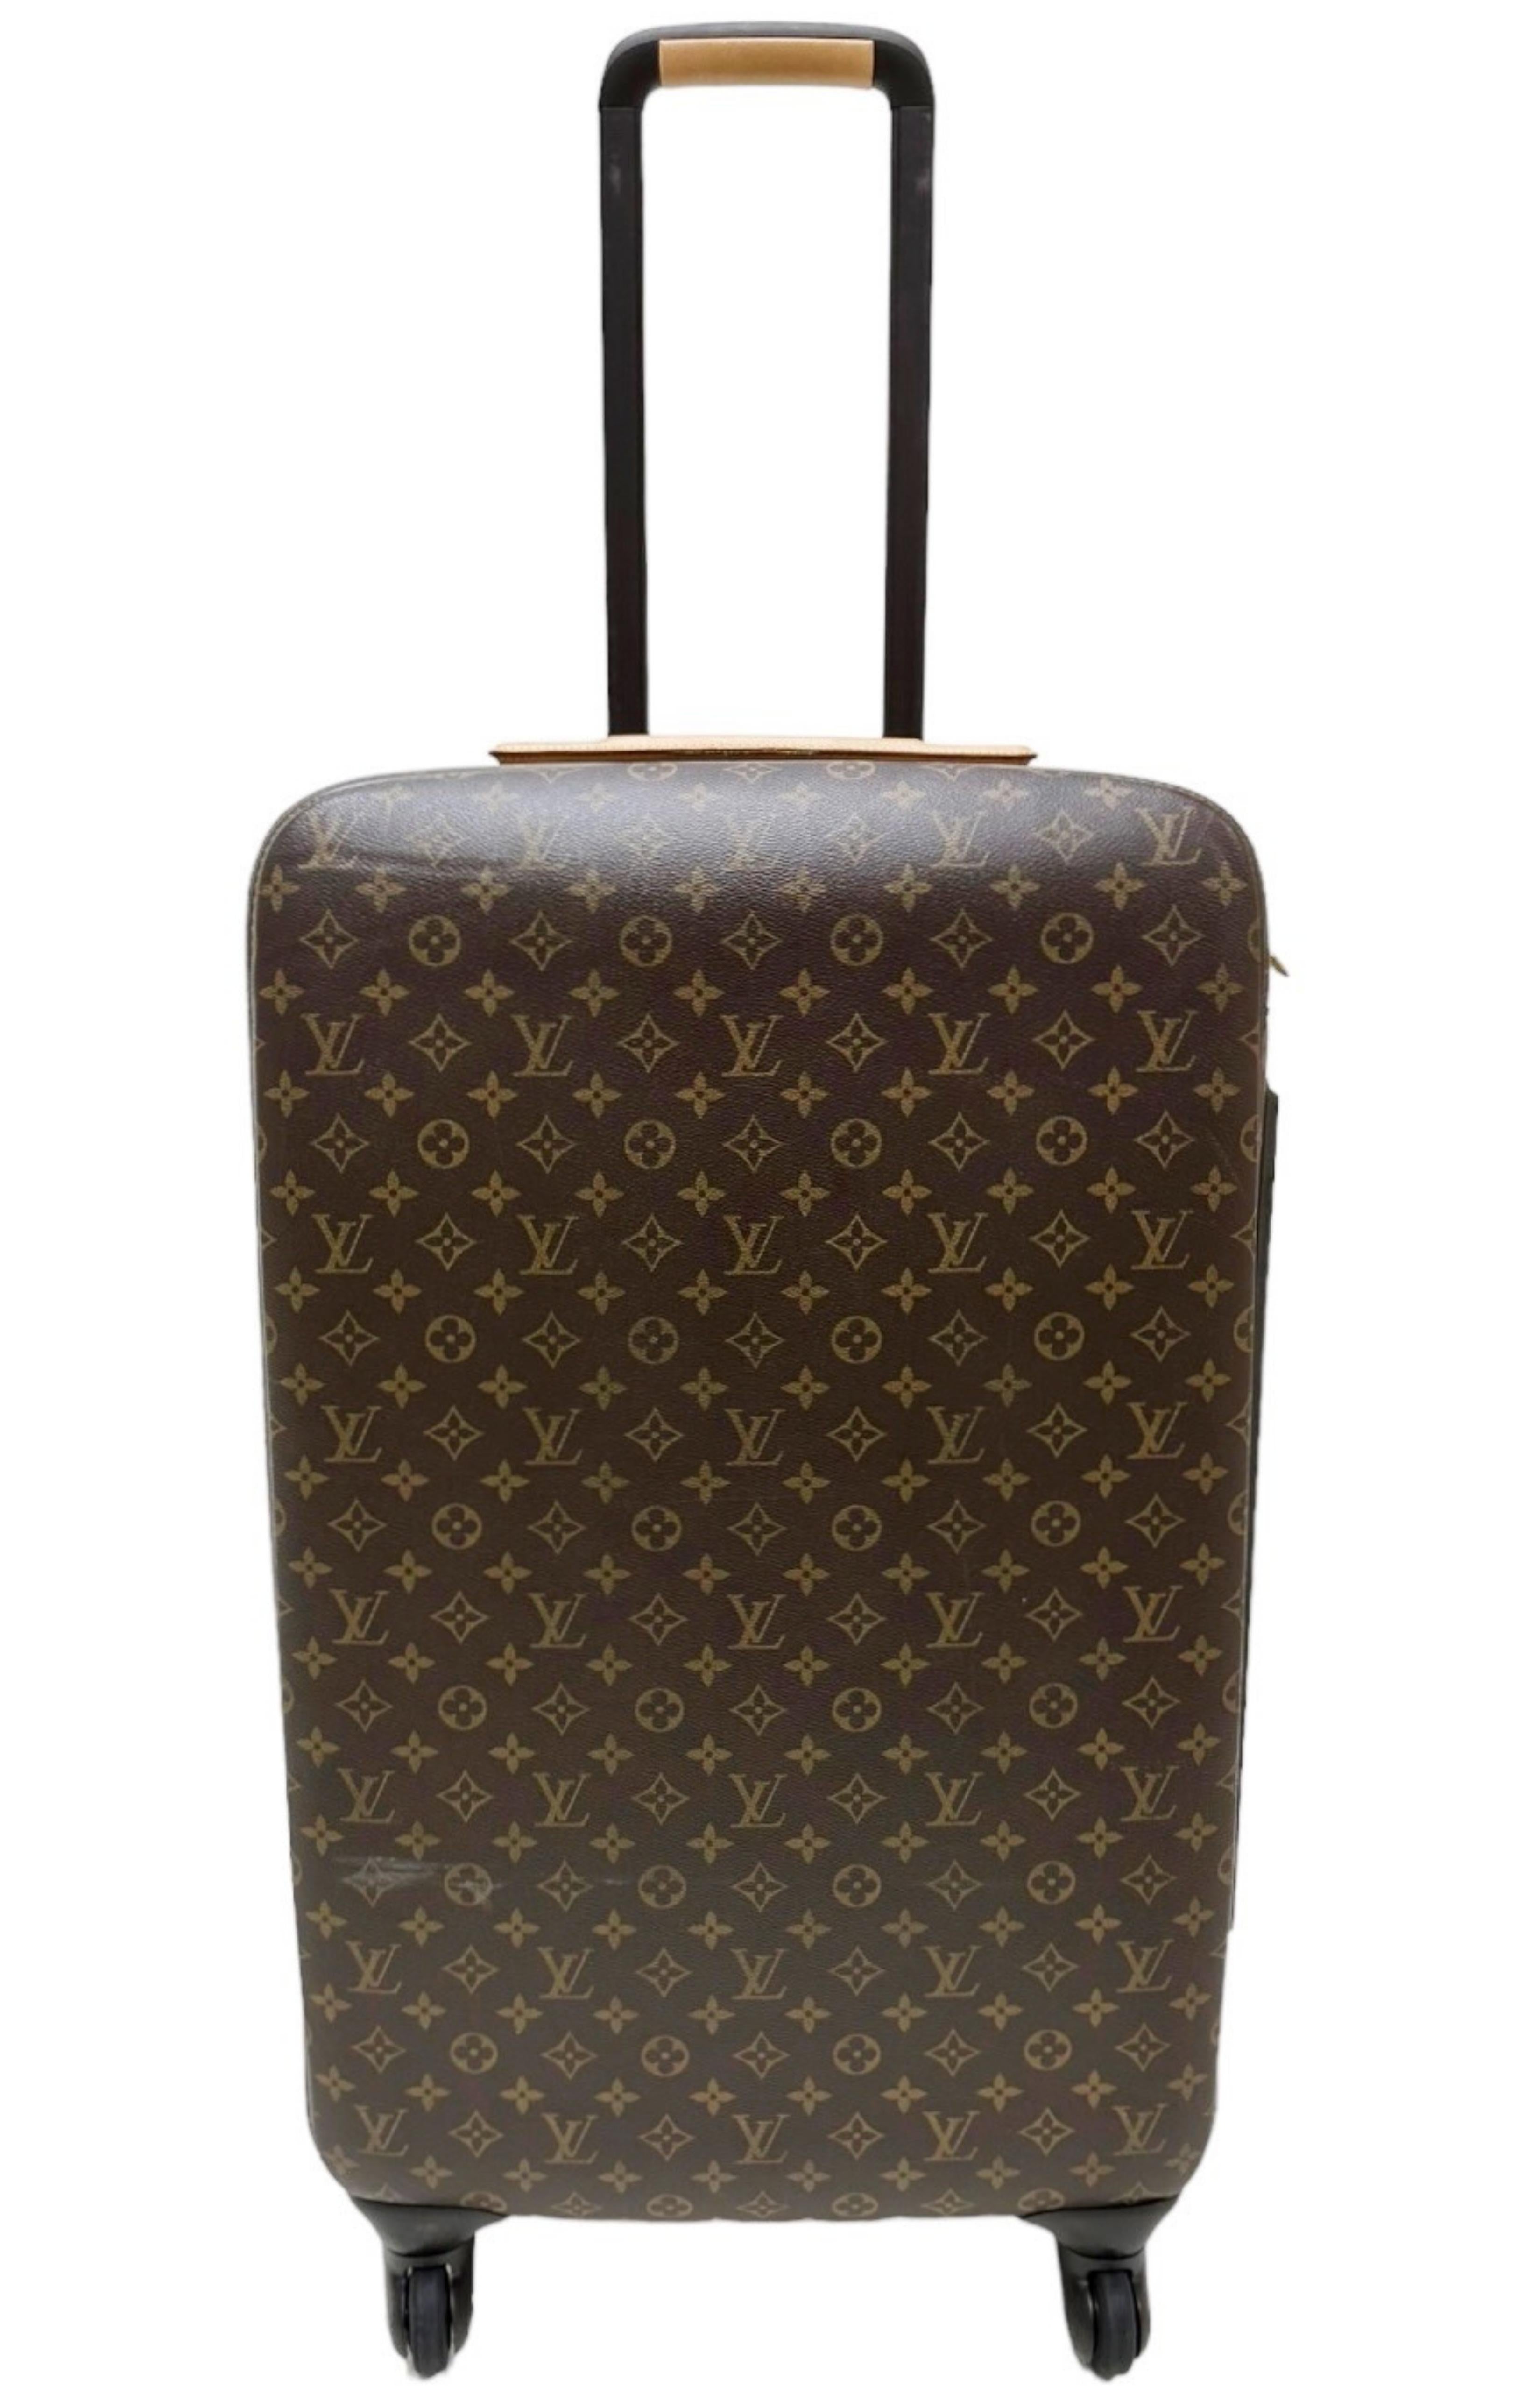 Louis Vuitton Luggage on Wheels 